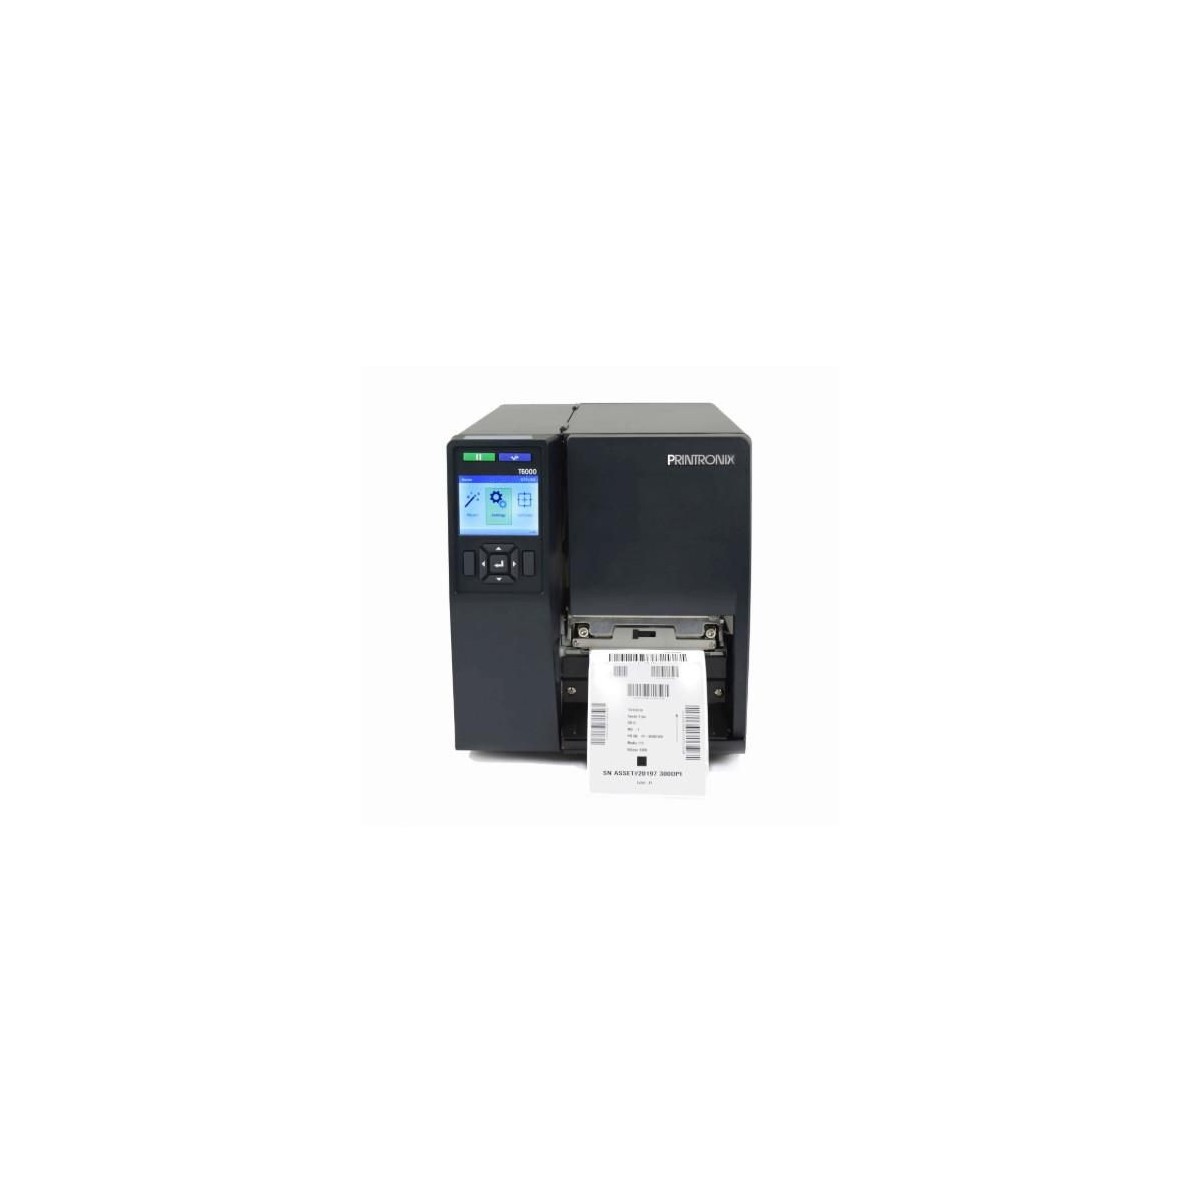 Printronix Auto ID T6304e Thermal Transfer Printer 4" wide 300dpi - Printer - Label Printer